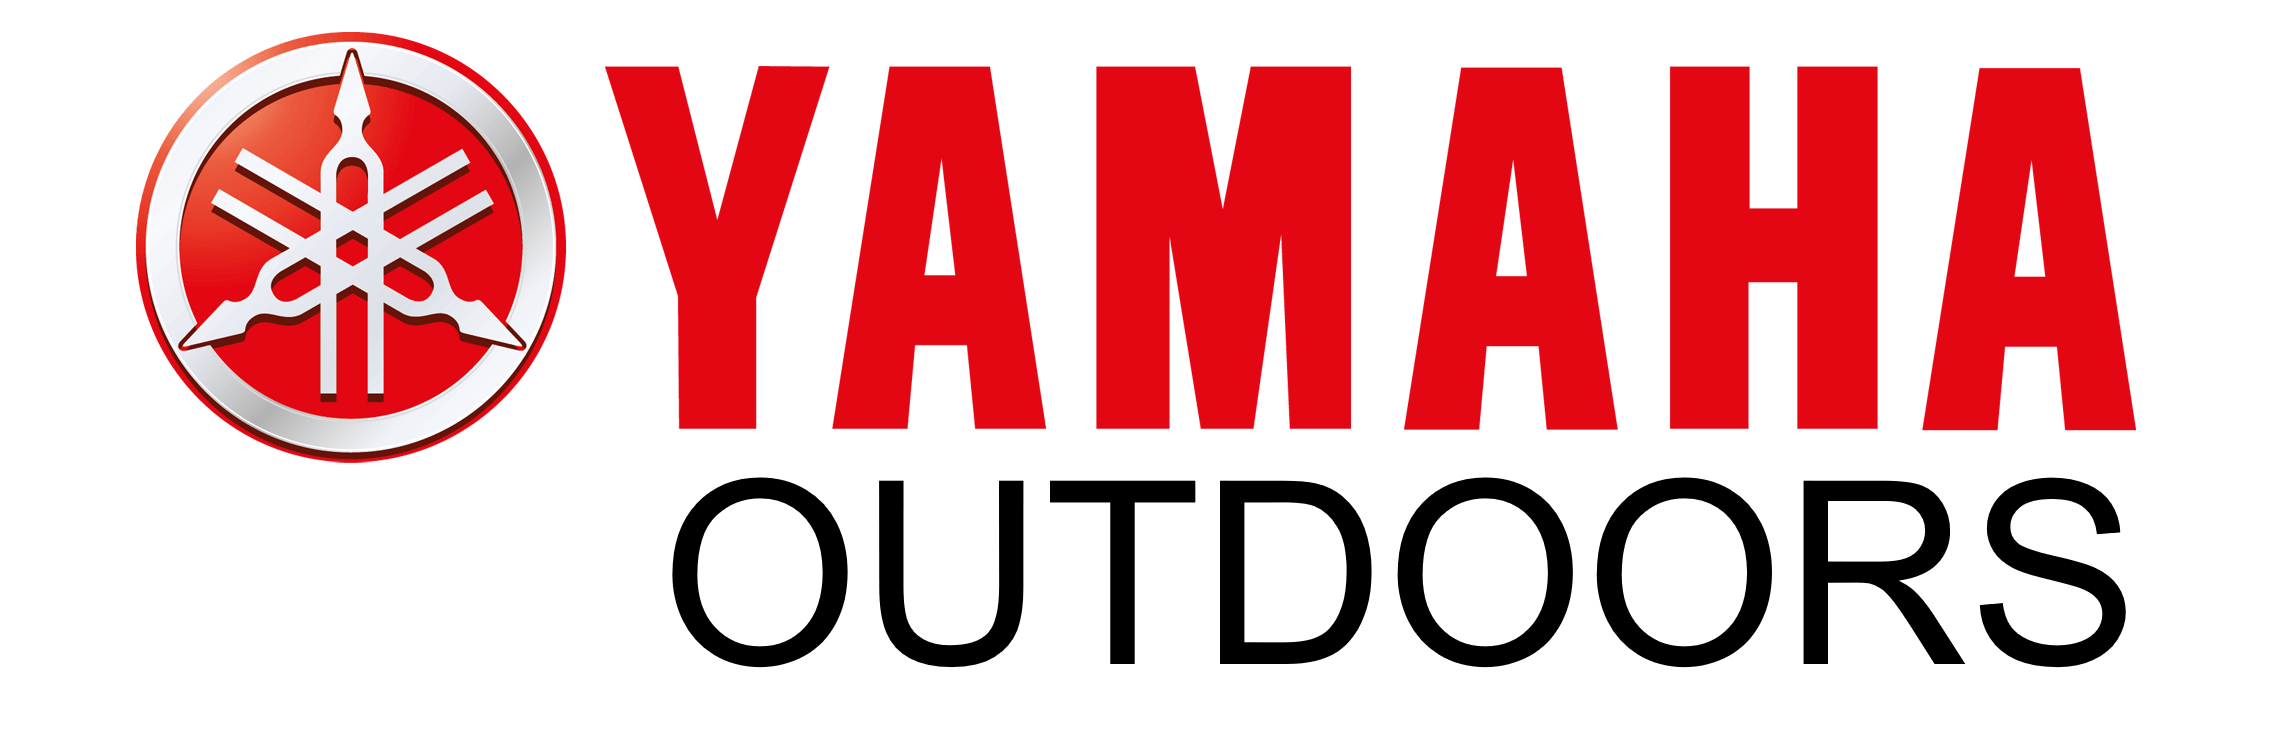 Yamaha Outdoors logo